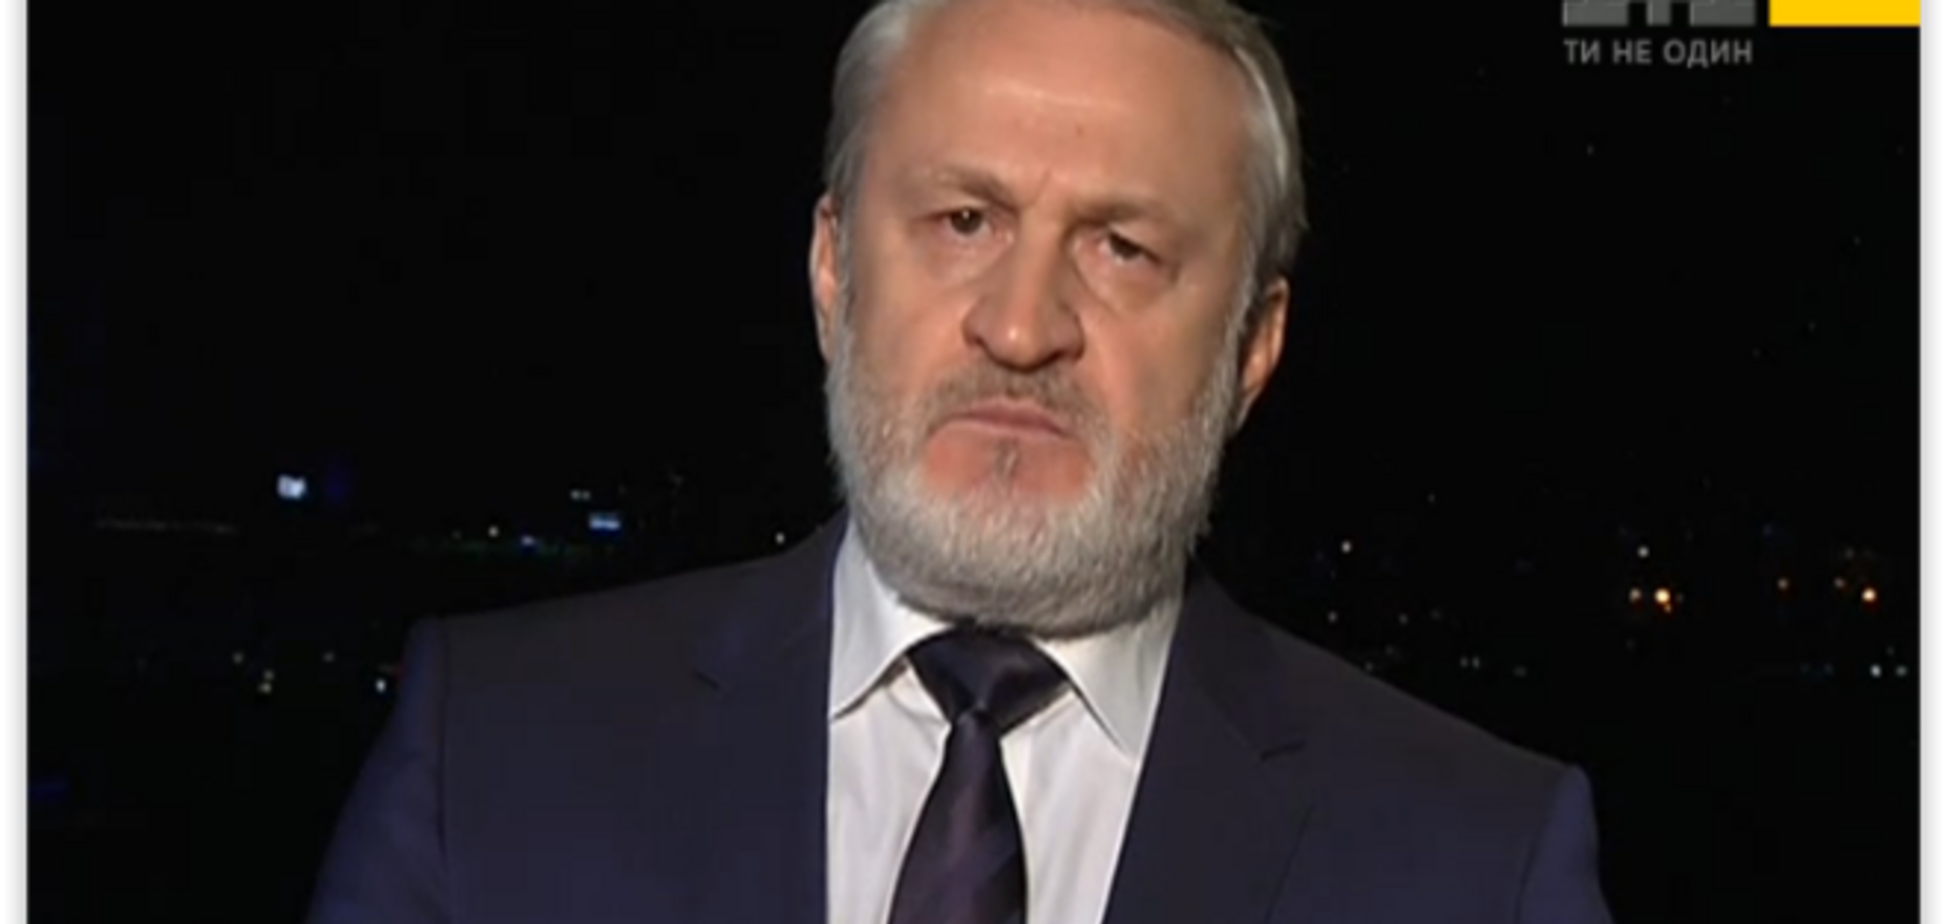 Во французской трагедии может быть российский след – чеченский политик